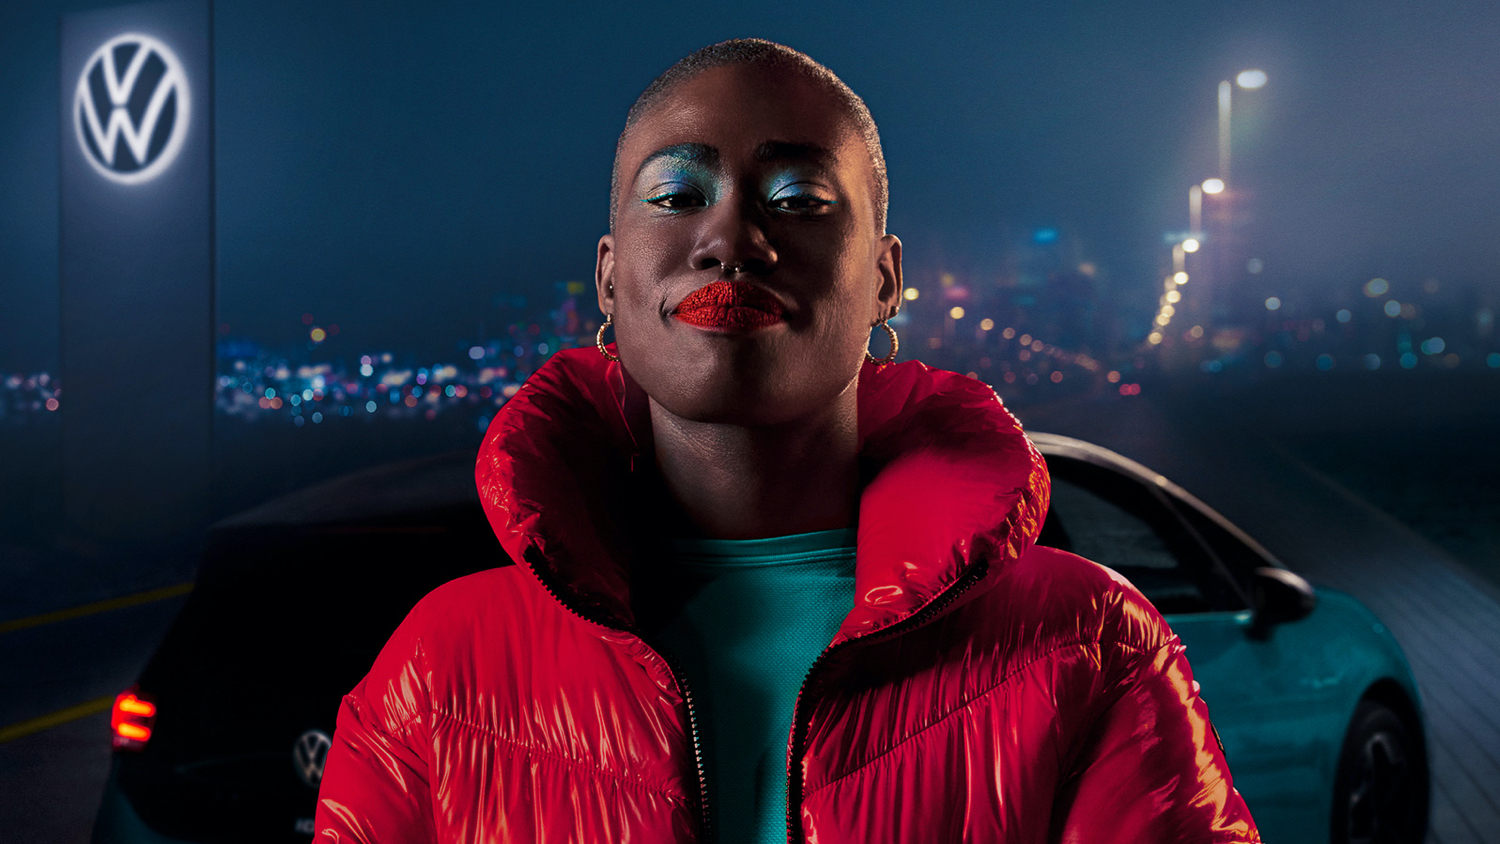 Een vrouw in een rode jas die voor een VW ID. staat met een verlicht VW-logo in de achtergrond